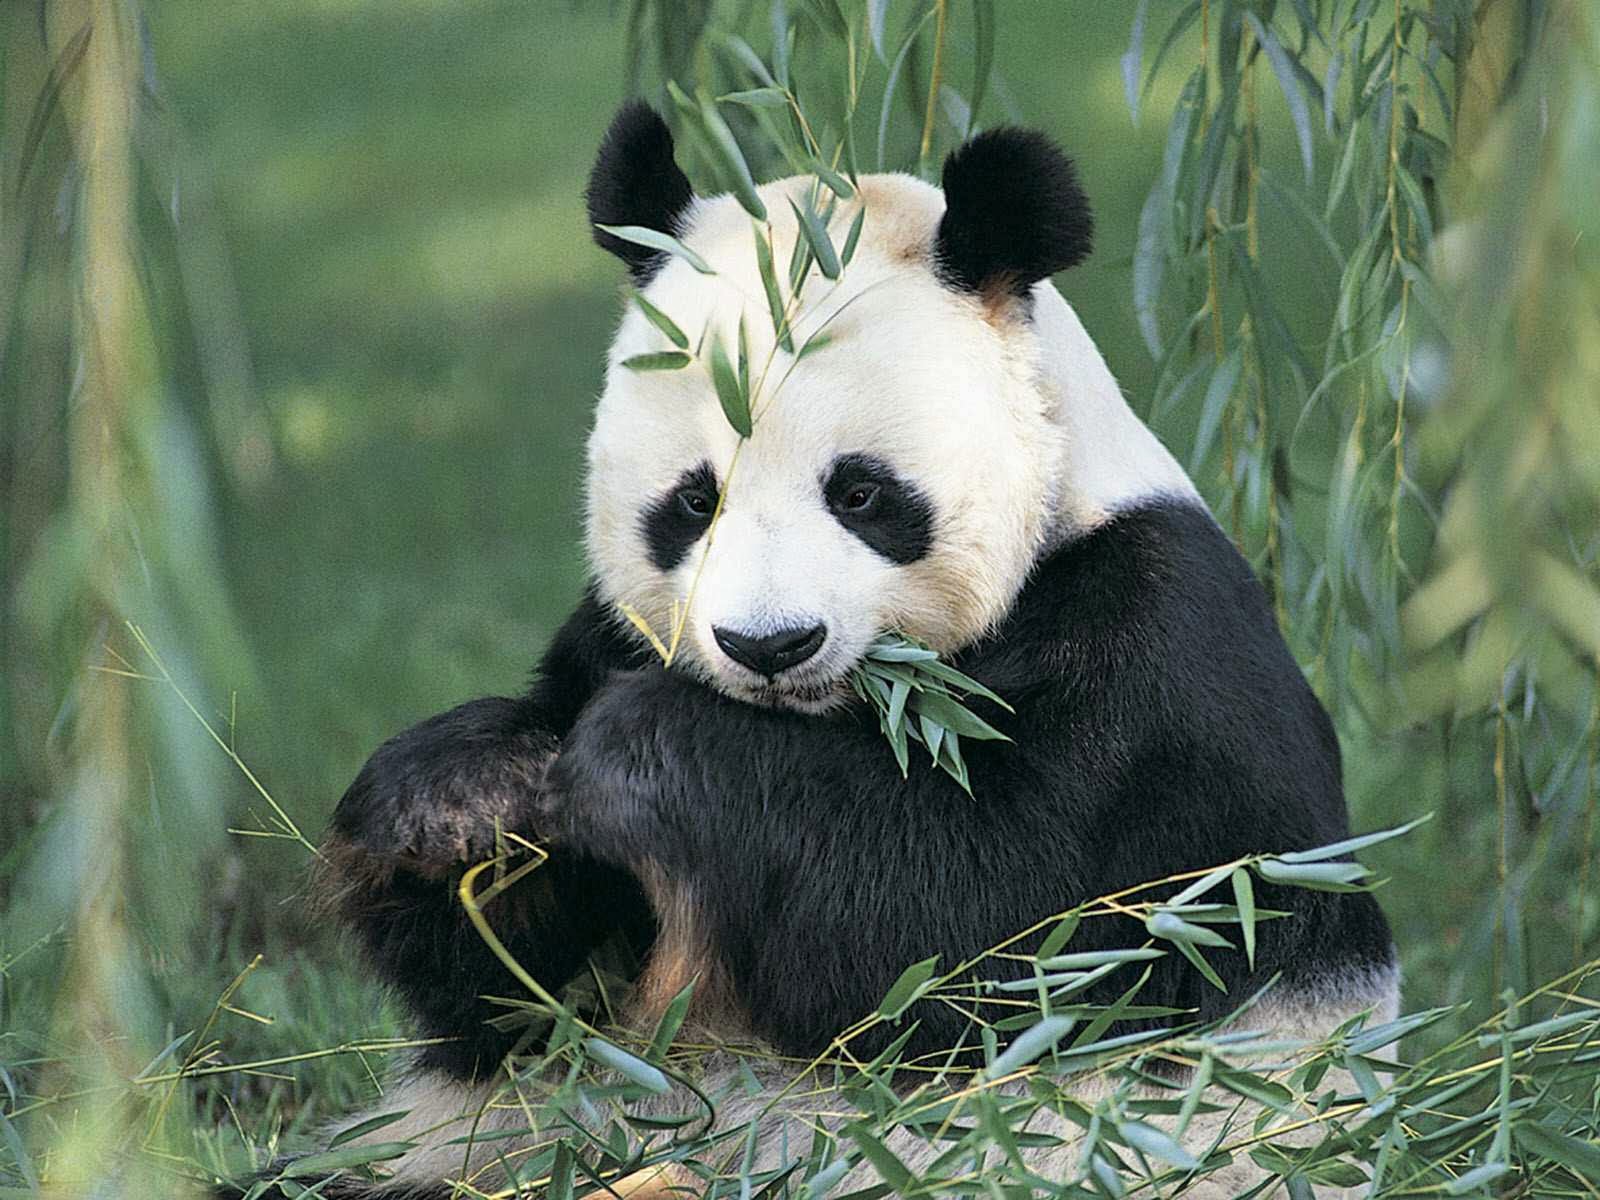 Foto Lucu Binatang Panda Terbaru Display Picture Unik